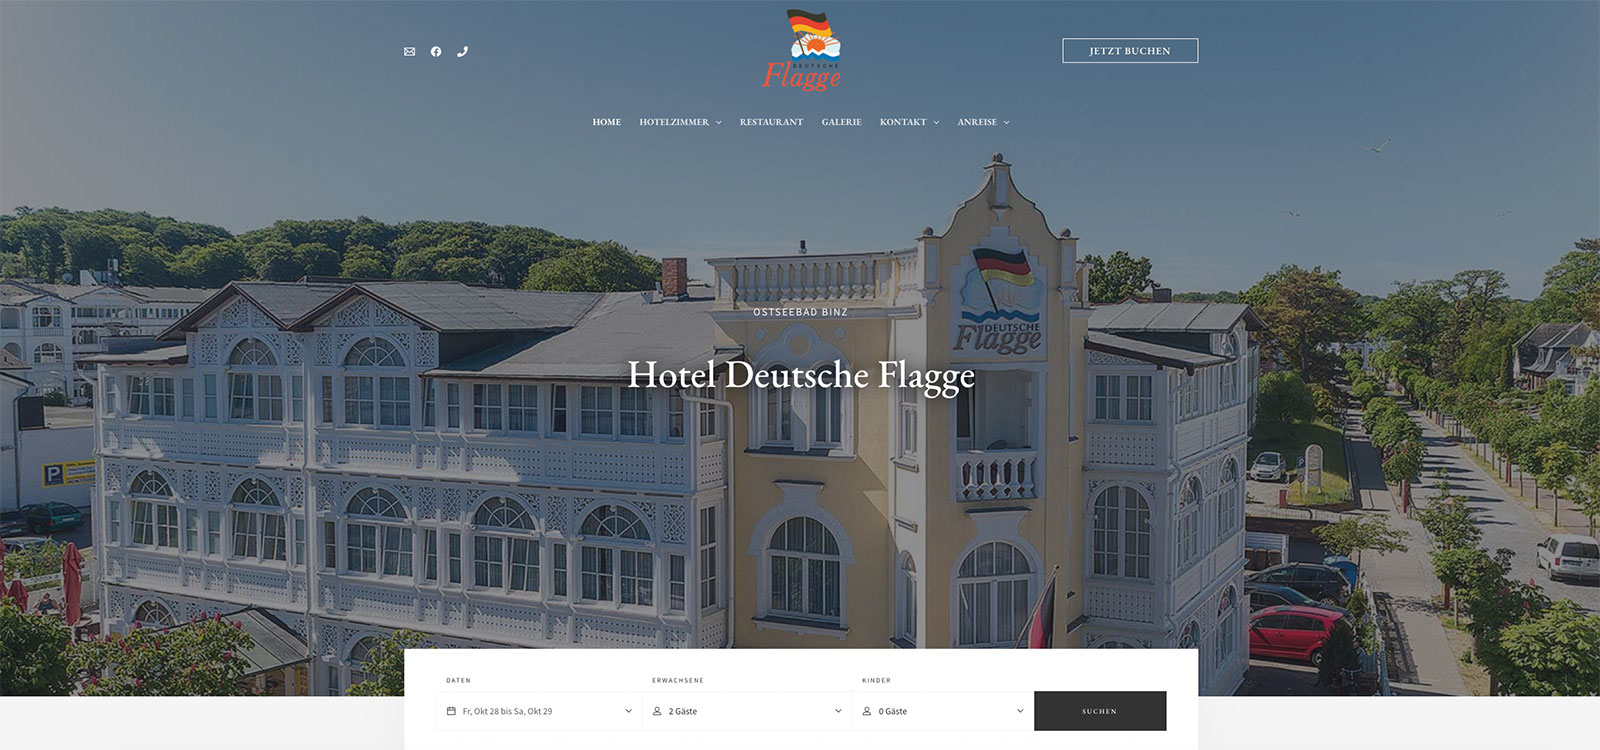 Hotel Binz Rügen Content Management System im Responsive Webdesign